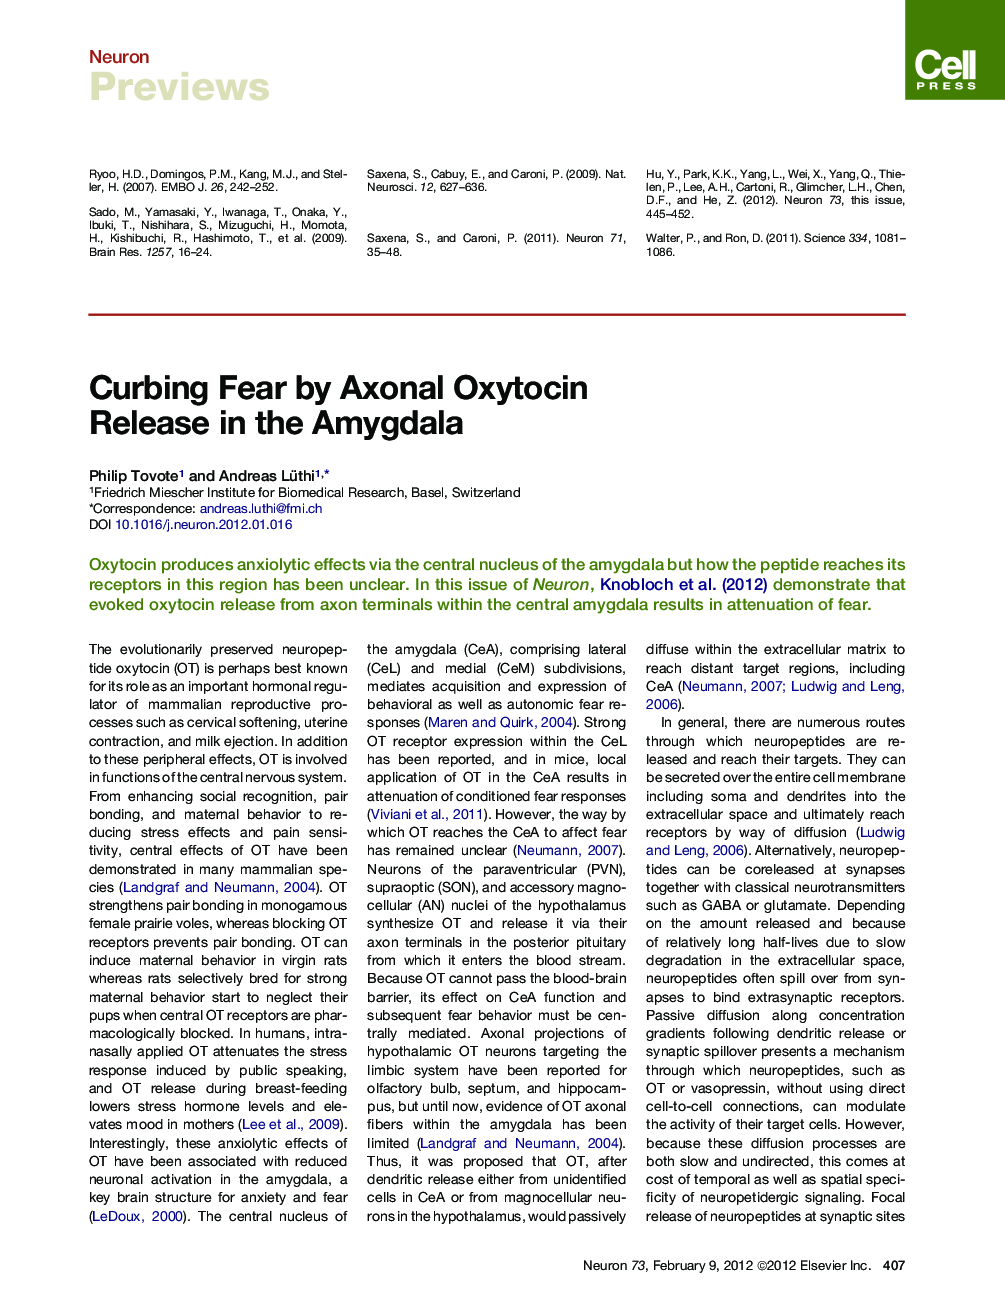 Curbing Fear by Axonal Oxytocin Release in the Amygdala